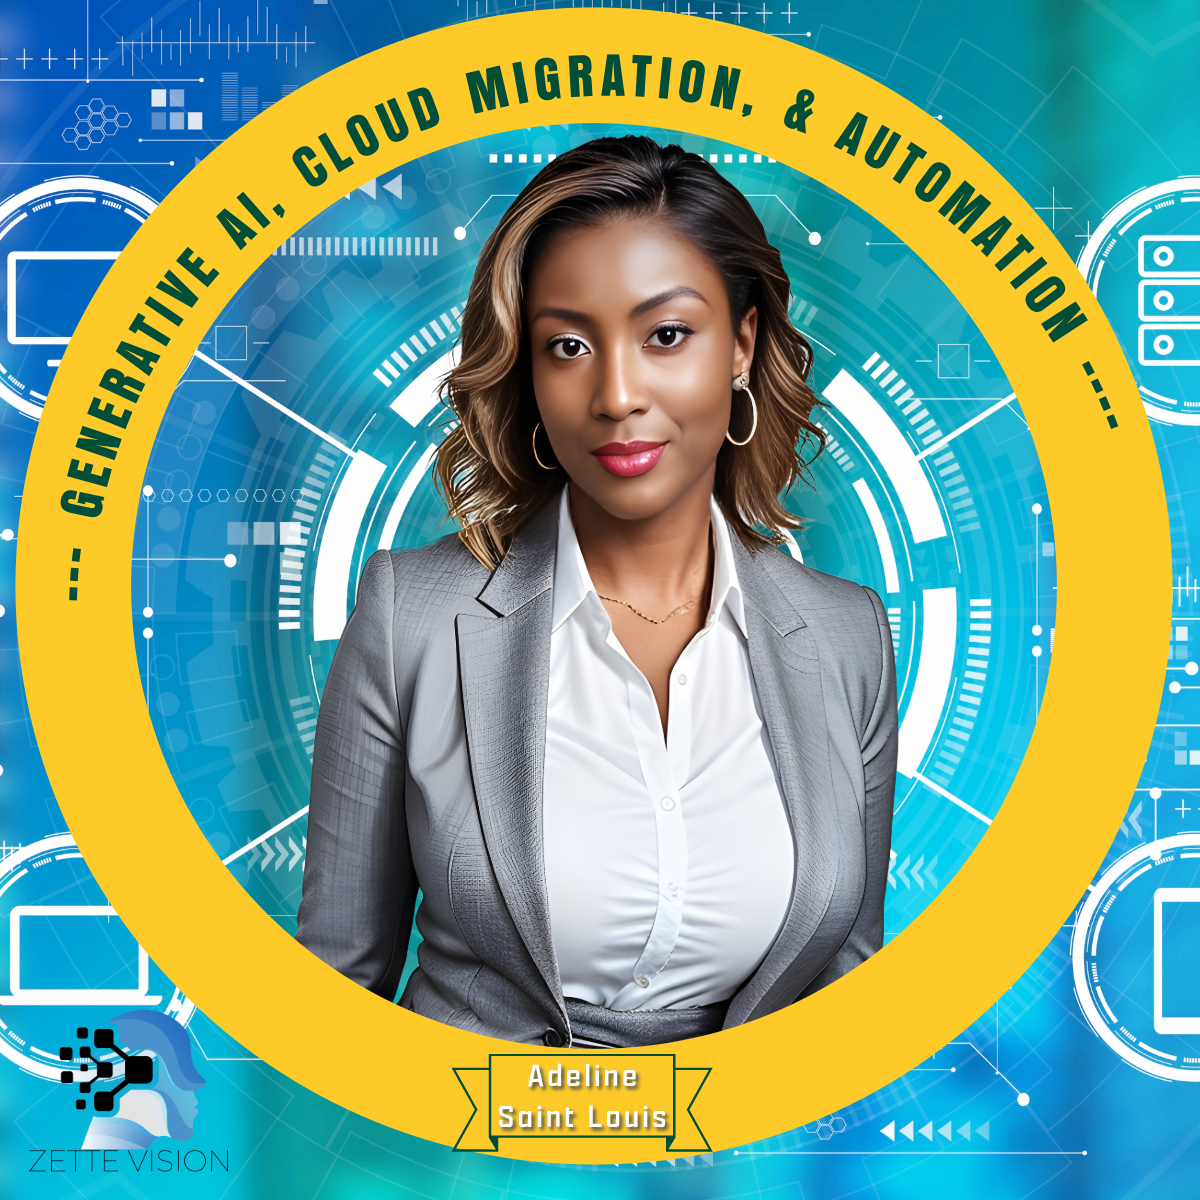 Adeline Saint Louis
Generative AI, Cloud Migration, and Automation Expert